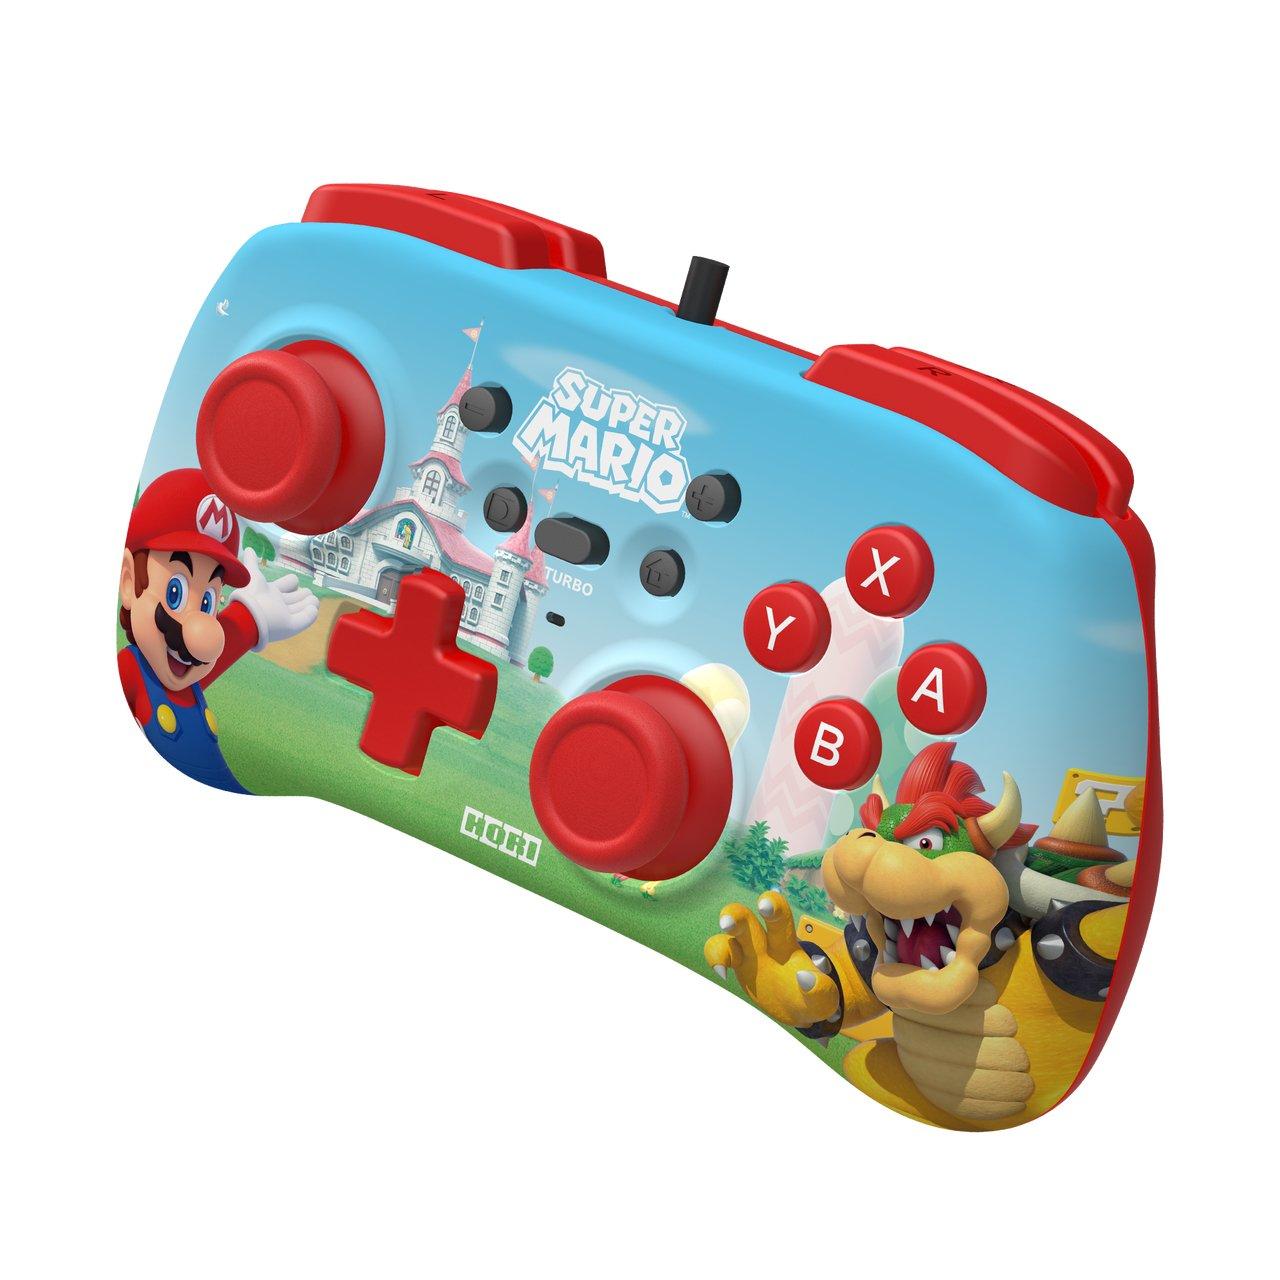 Hori  PAD Mini (Super Mario) Multicolore USB Gamepad Nintendo Switch 